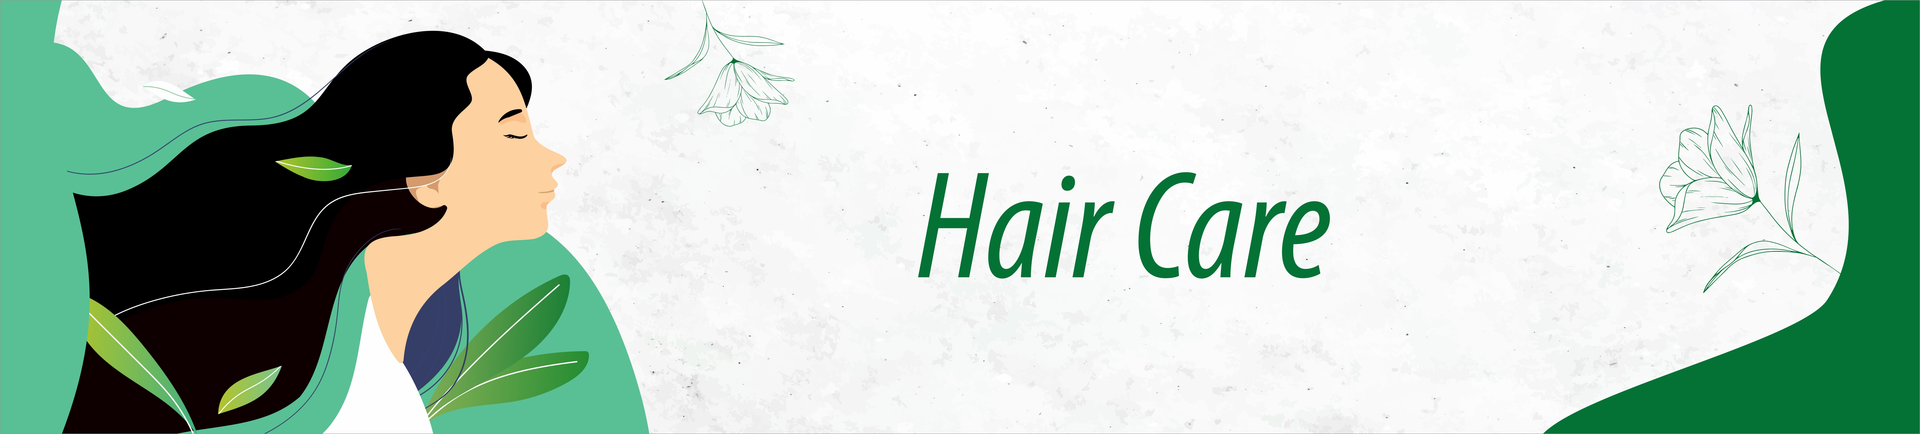 Hair Care Group